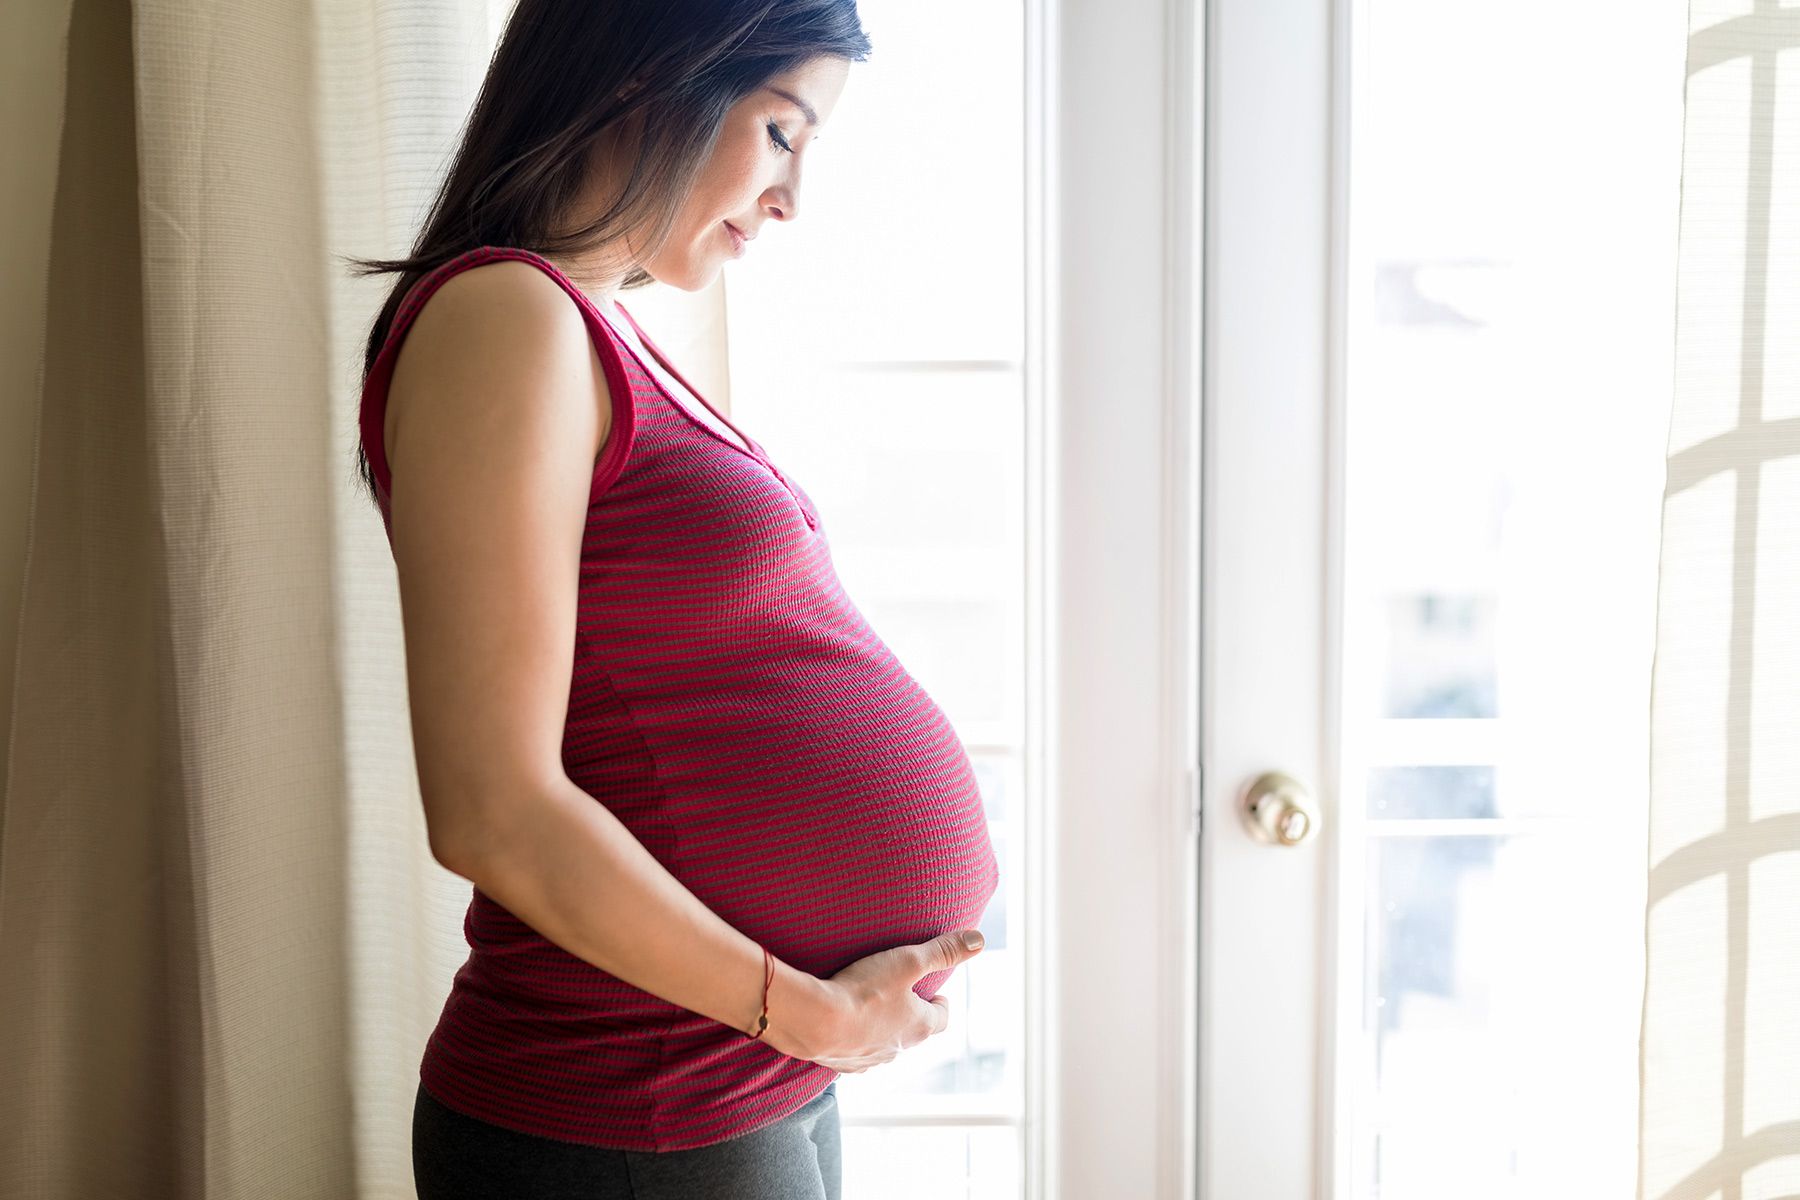 Diabetes gestational adalah tipe penyakit gula terjadi saat kehamilan